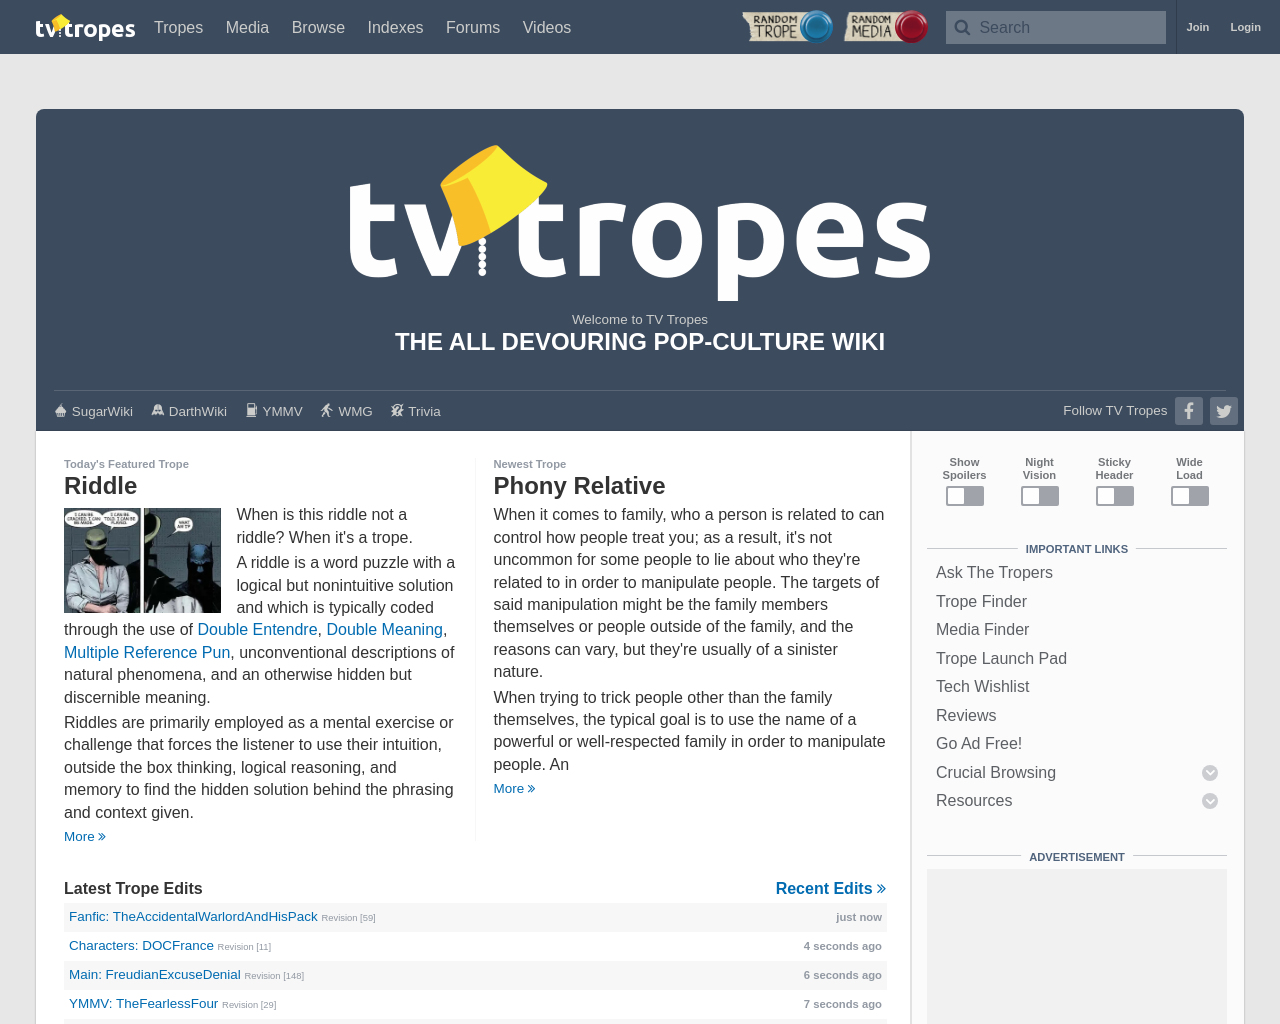 tvtropes.org